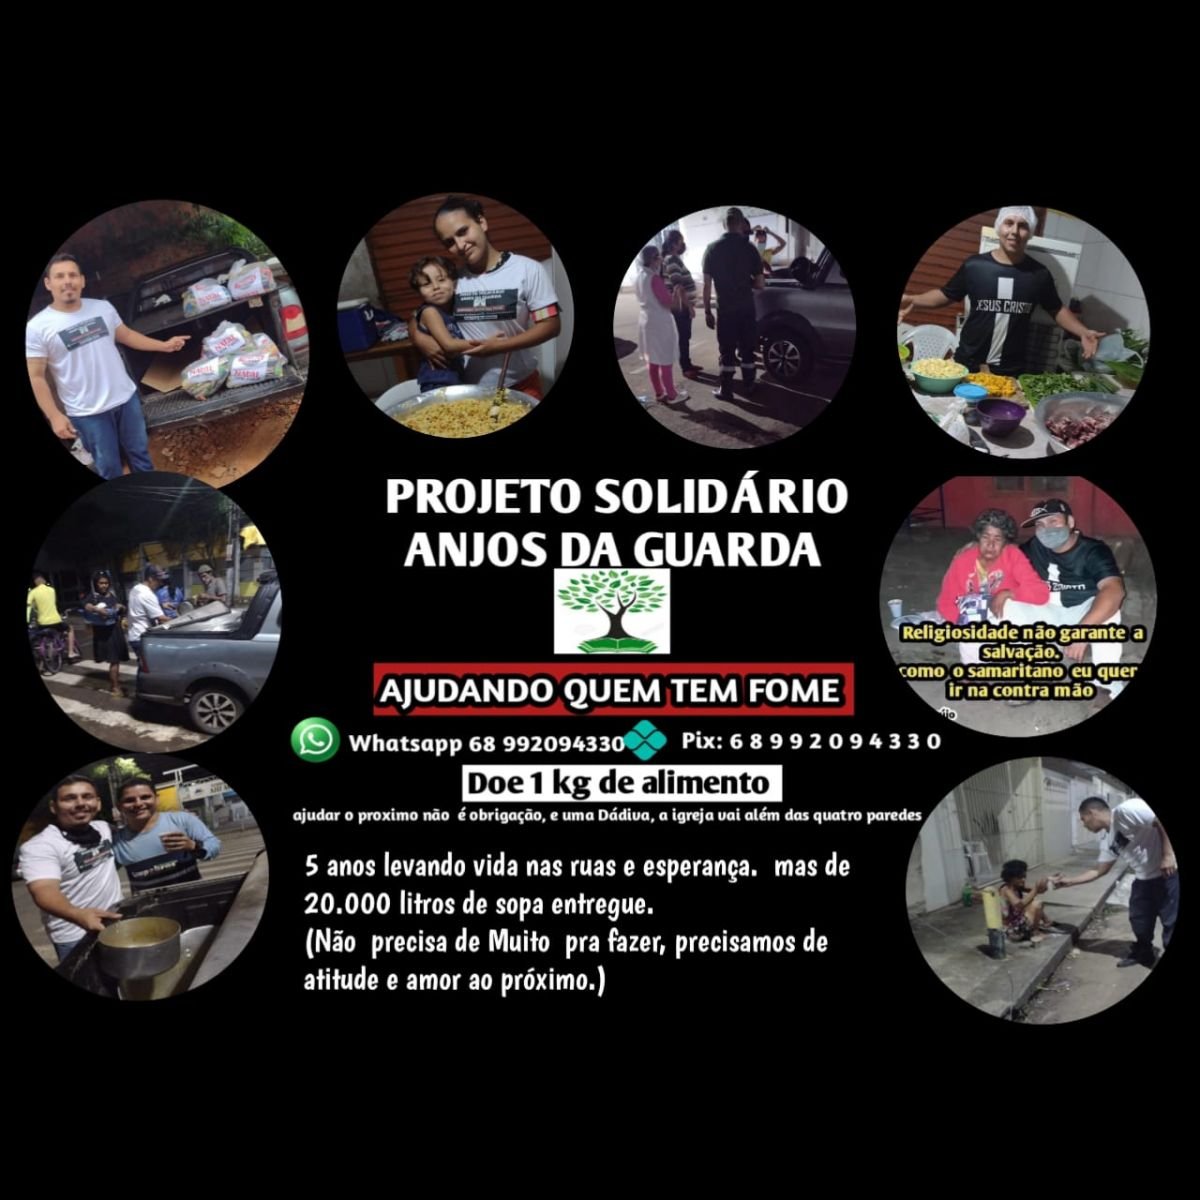 Rede de Solidariedade: Voluntários do Acre pedem contribuições dos Estados Vizinhos - News Rondônia